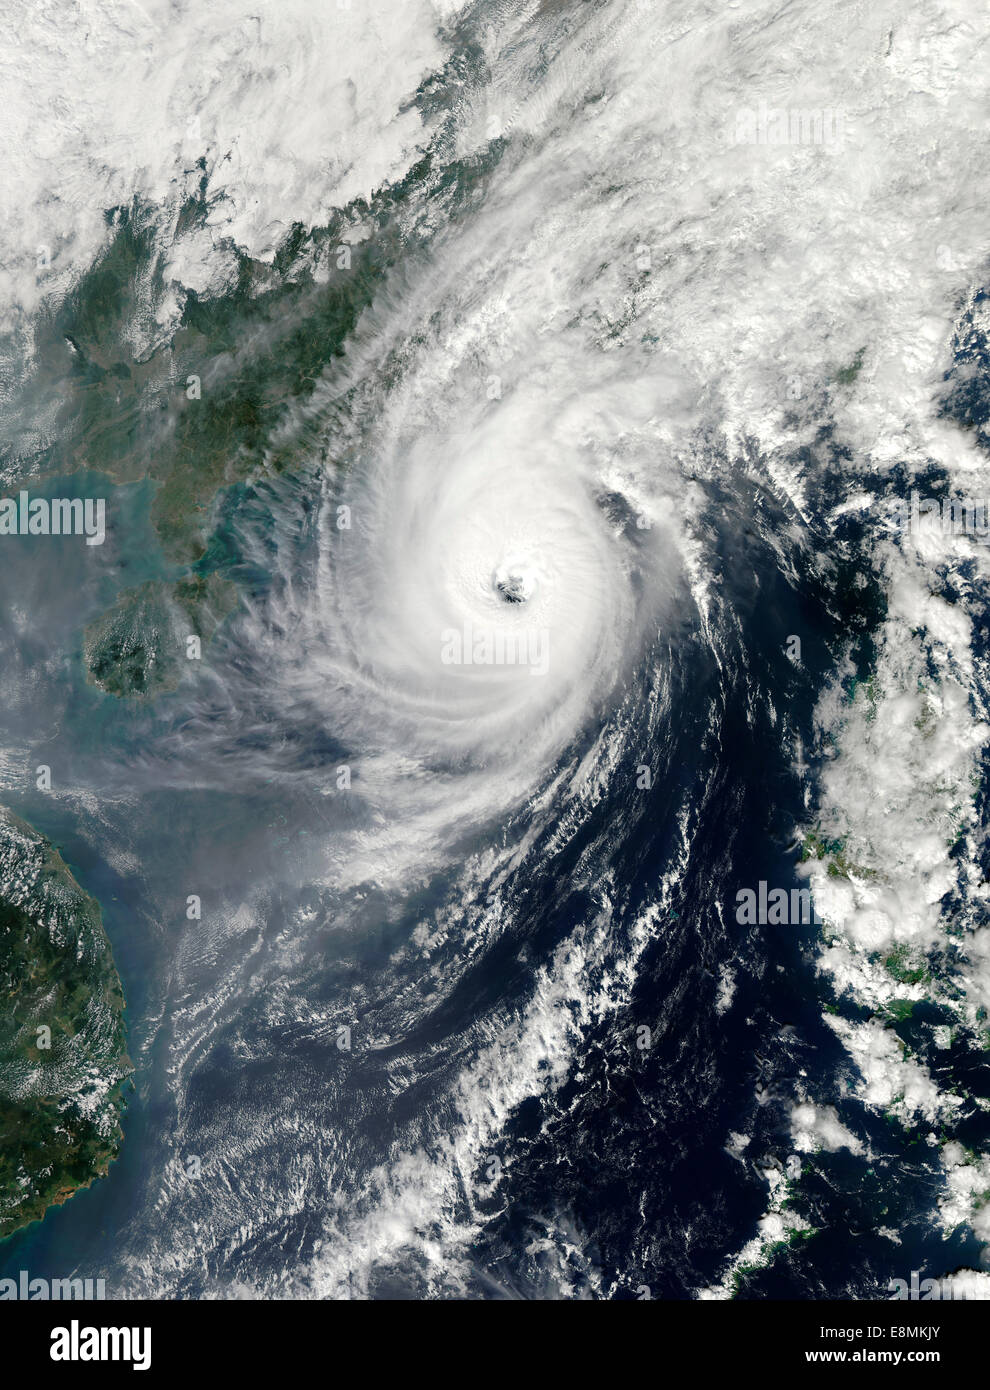 November 2, 2013 - Typhoon Krosa in the South China Sea. Stock Photo